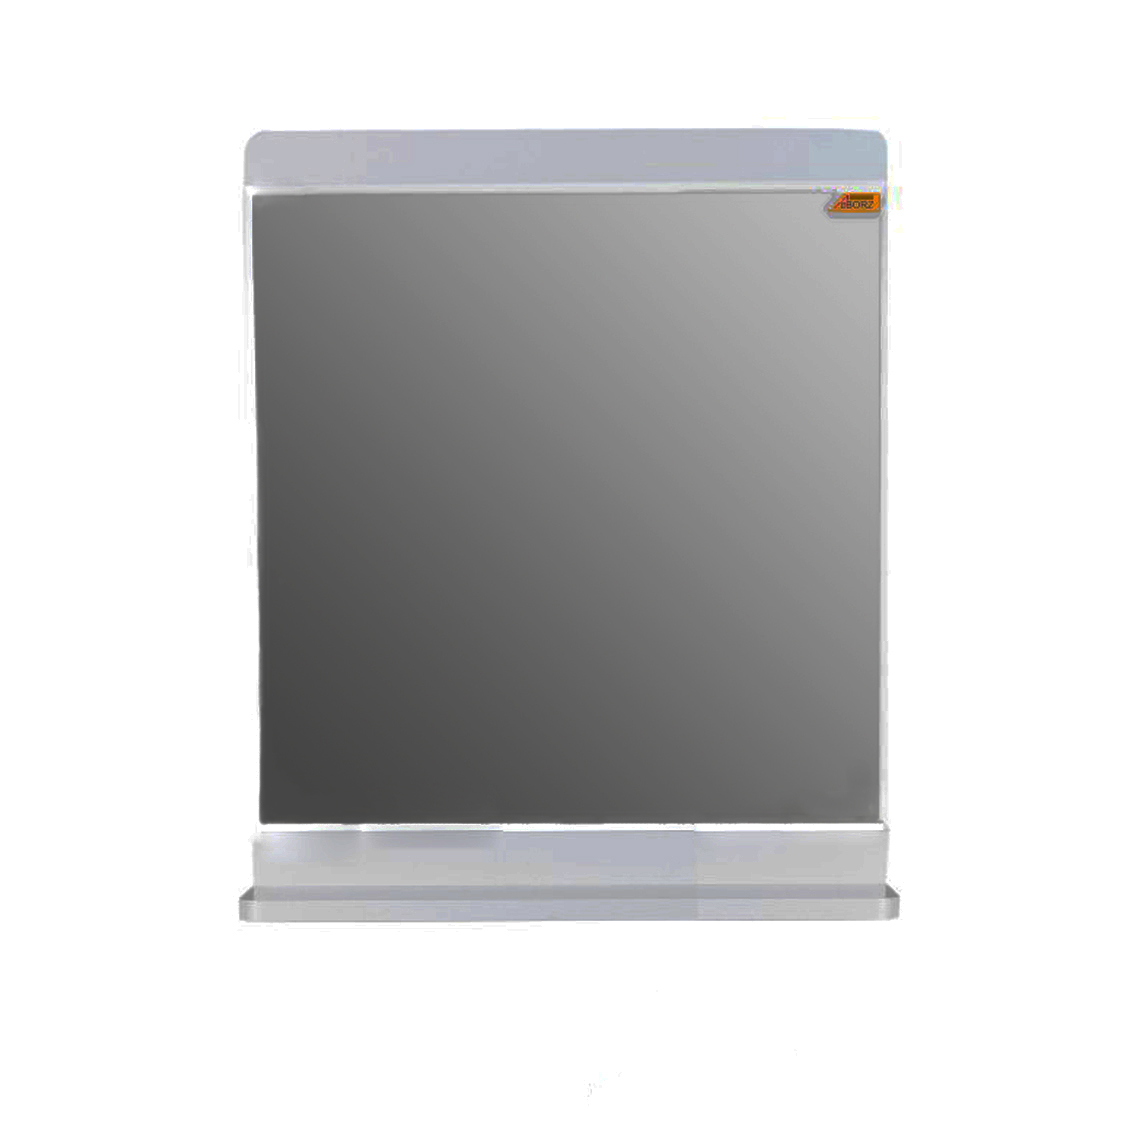 آینه سرویس بهداشتی البرز مدل 50 به همراه آتاژور